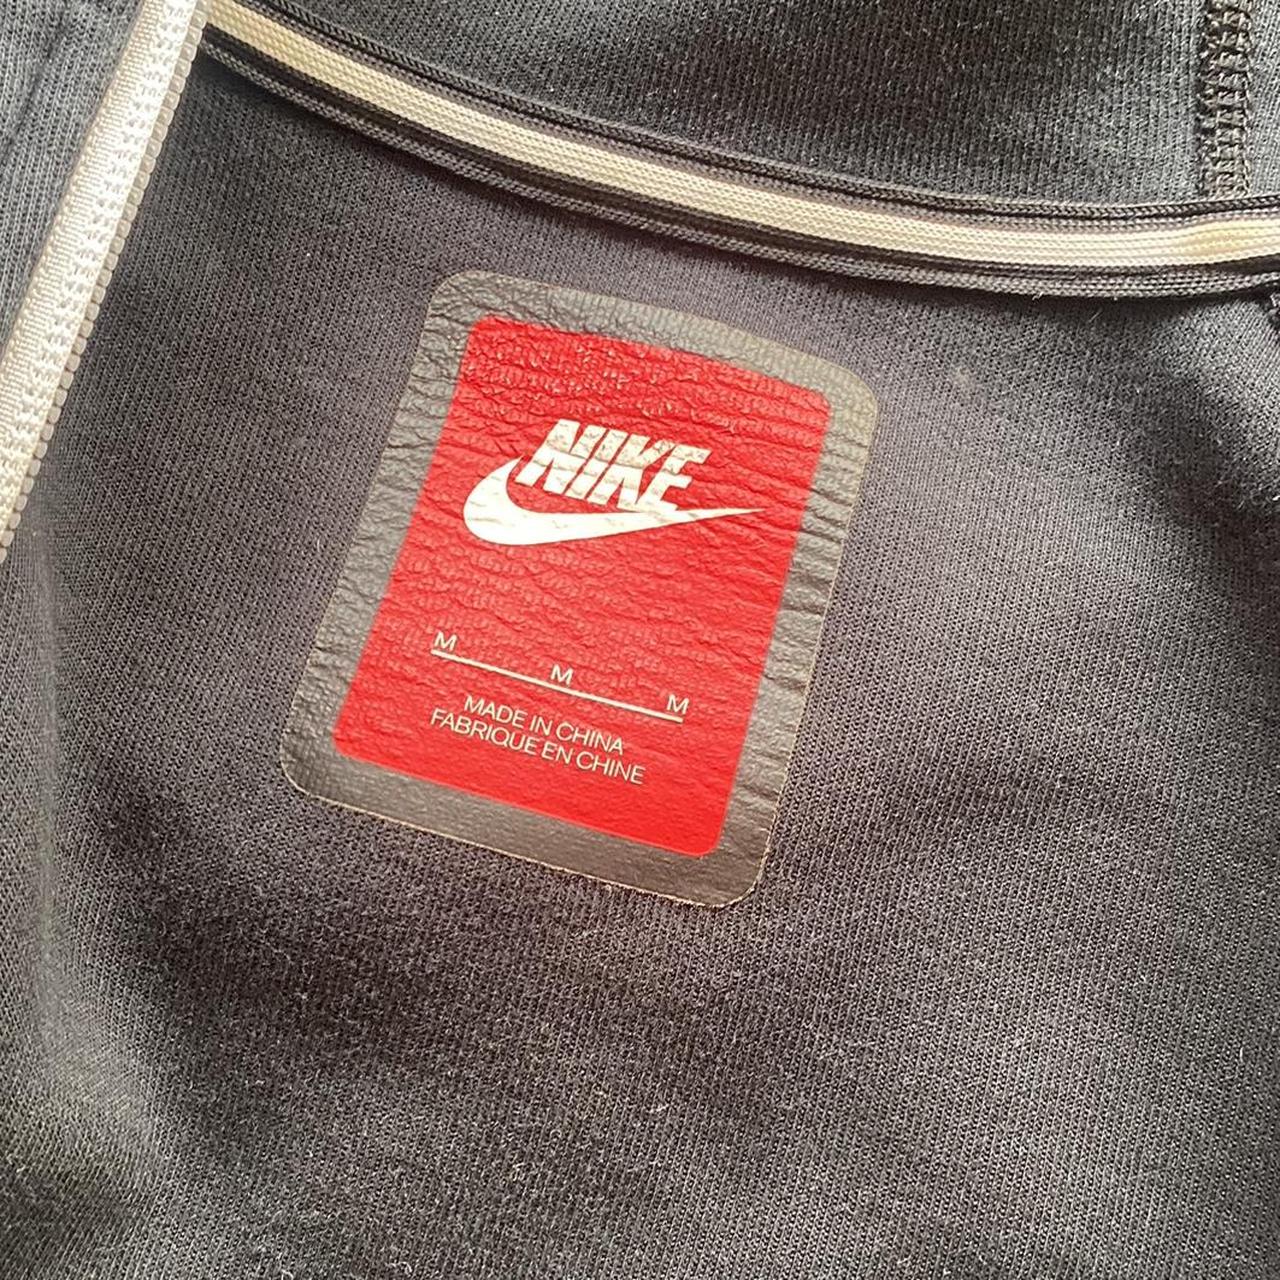 Nike tech fleece jacket Size M Super cute I just... - Depop